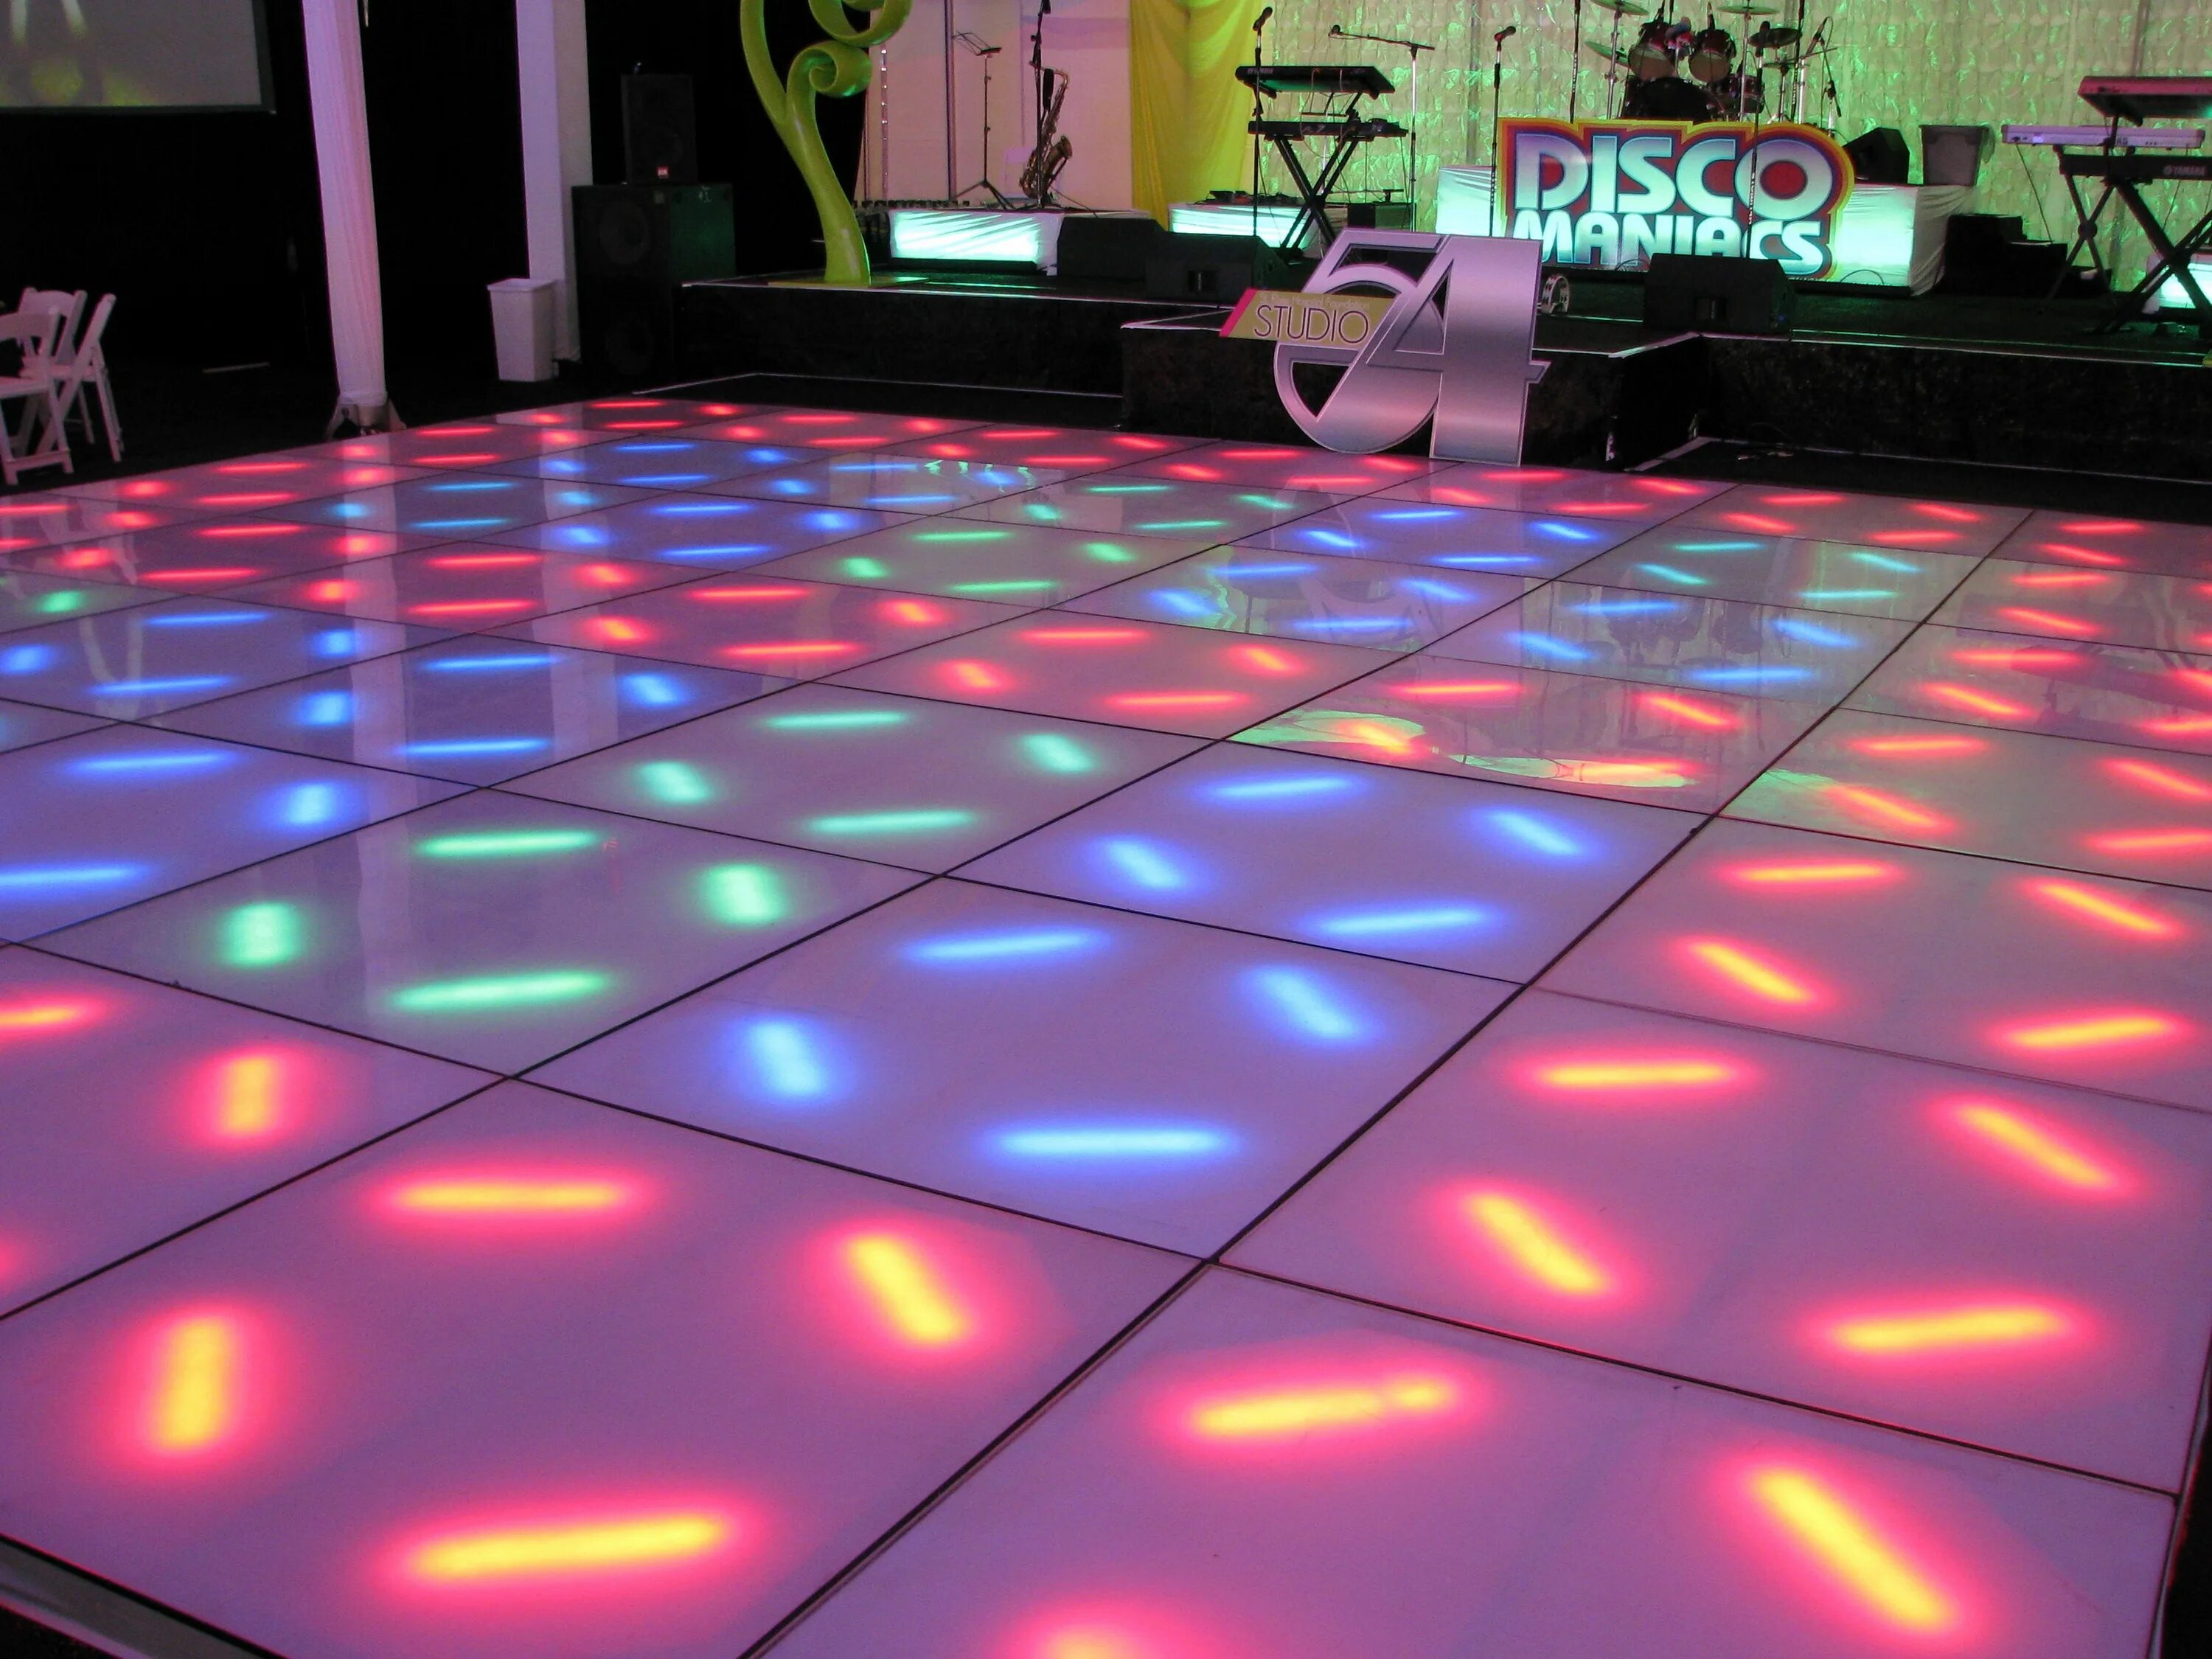 Newlightchild dancefloor. Пол дискотеки. Интерактивный светодиодный пол. Танцпол с подсветкой. Танцпол светящийся квадраты.